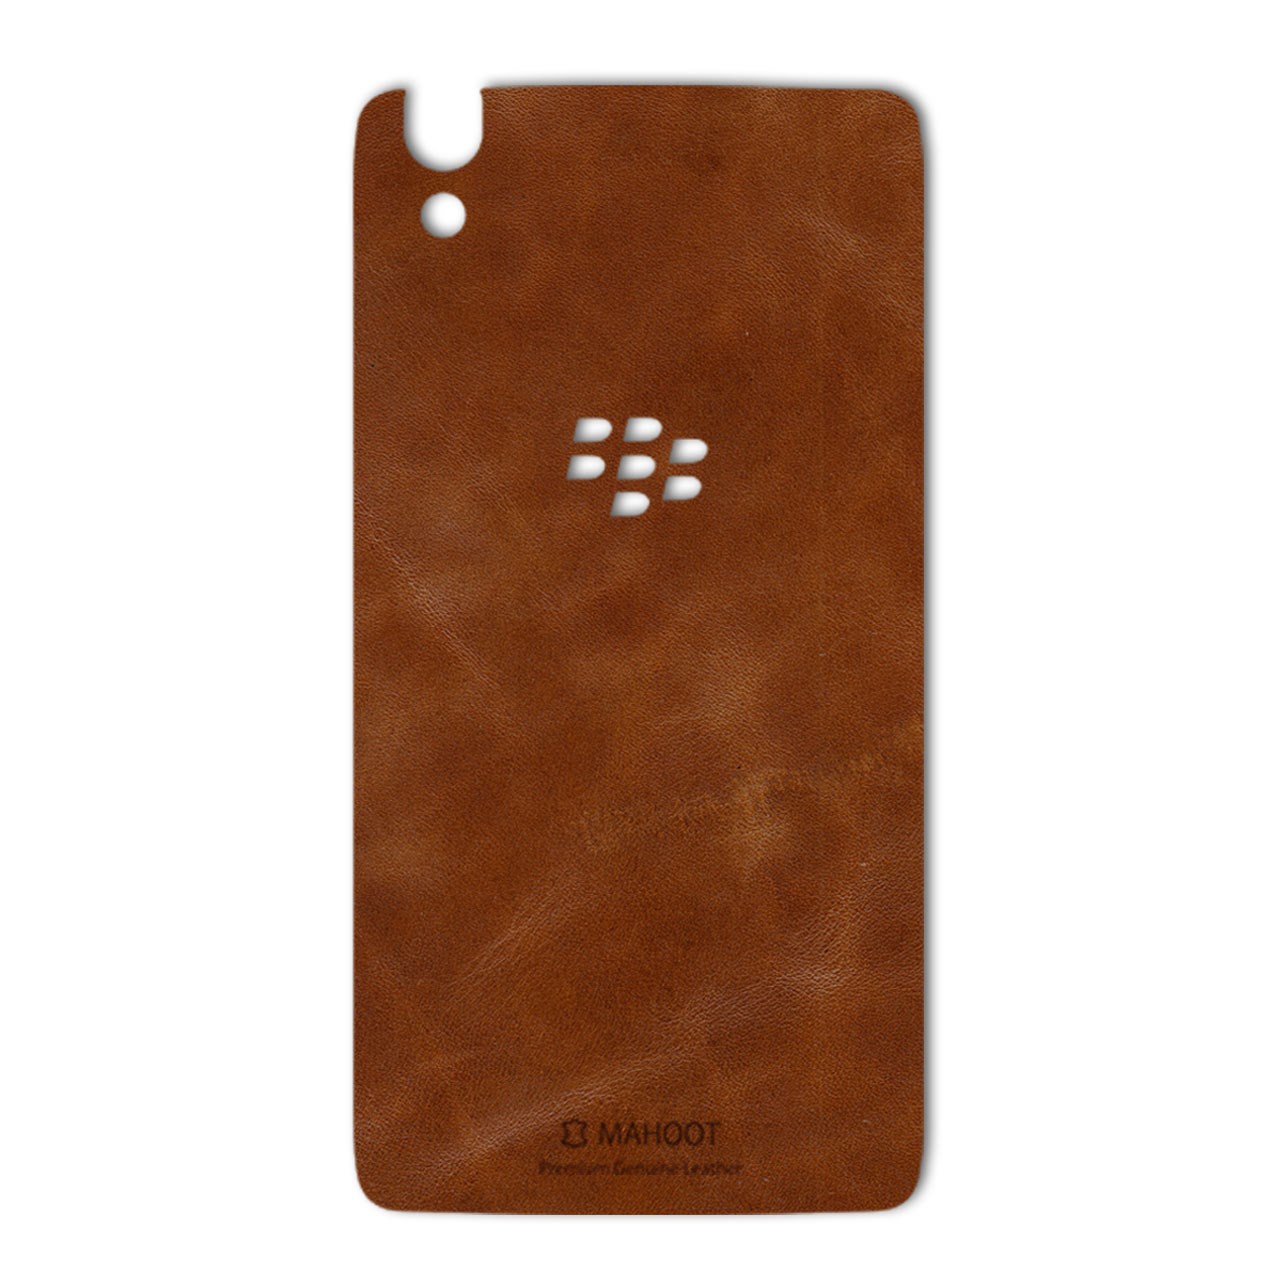 برچسب تزئینی ماهوت مدل Buffalo Leather مناسب برای گوشی BlackBerry Dtek 50